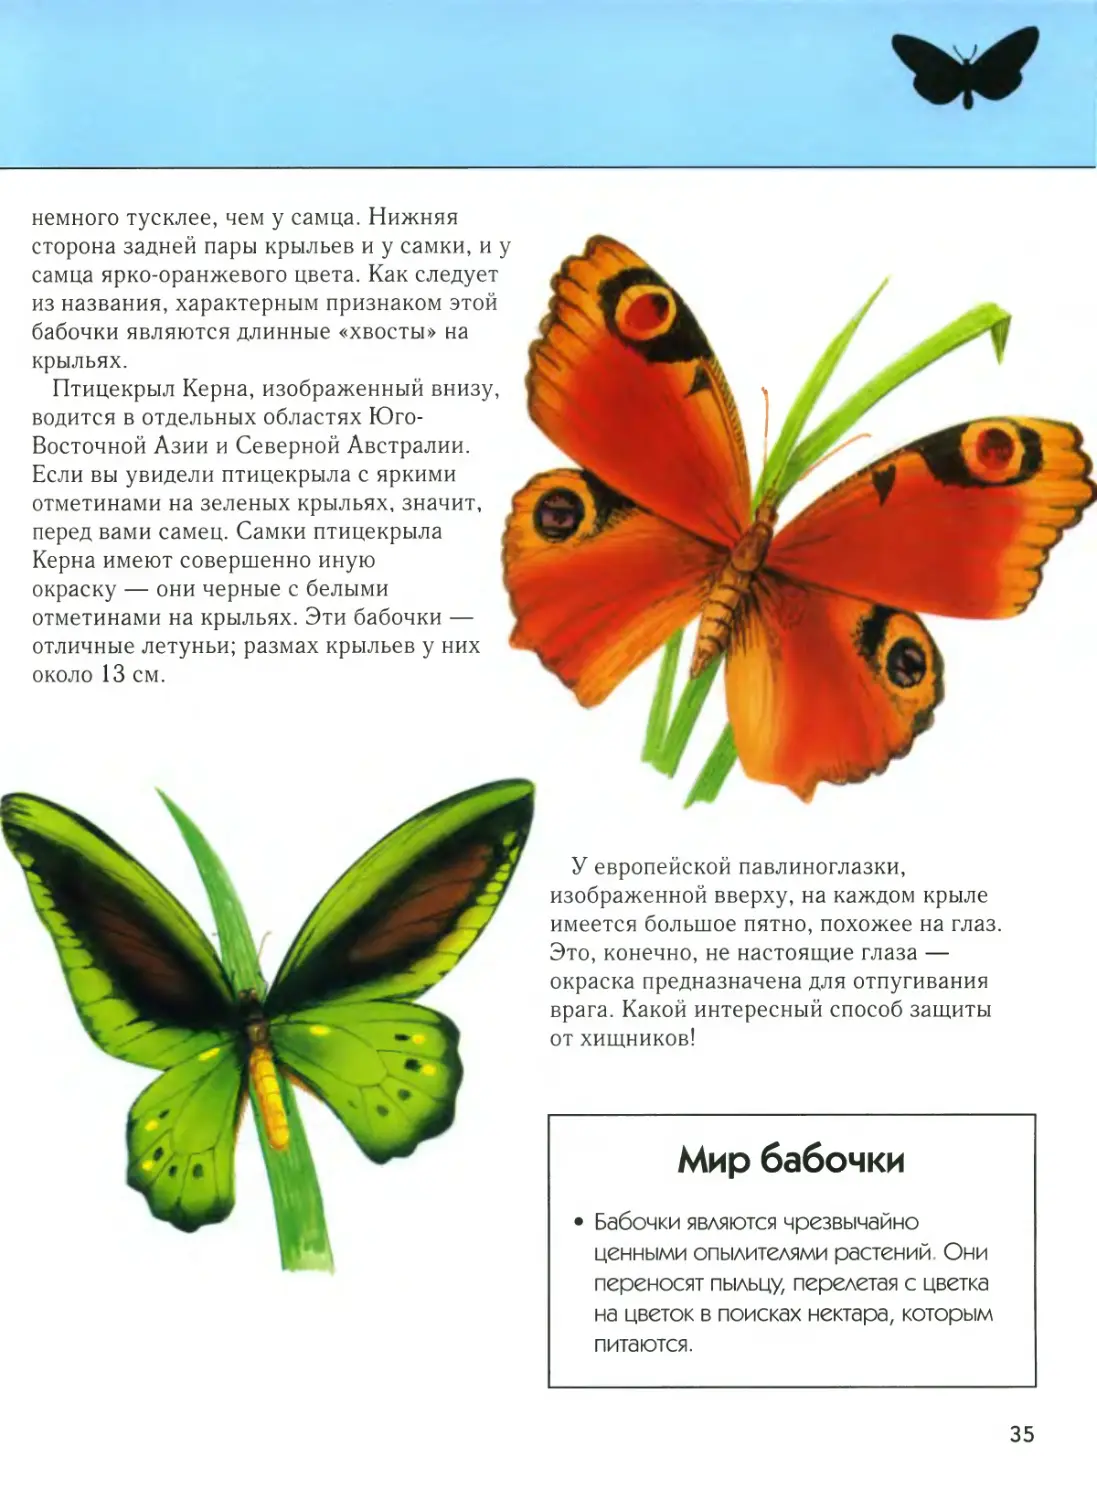 Бабочки с описанием и названием